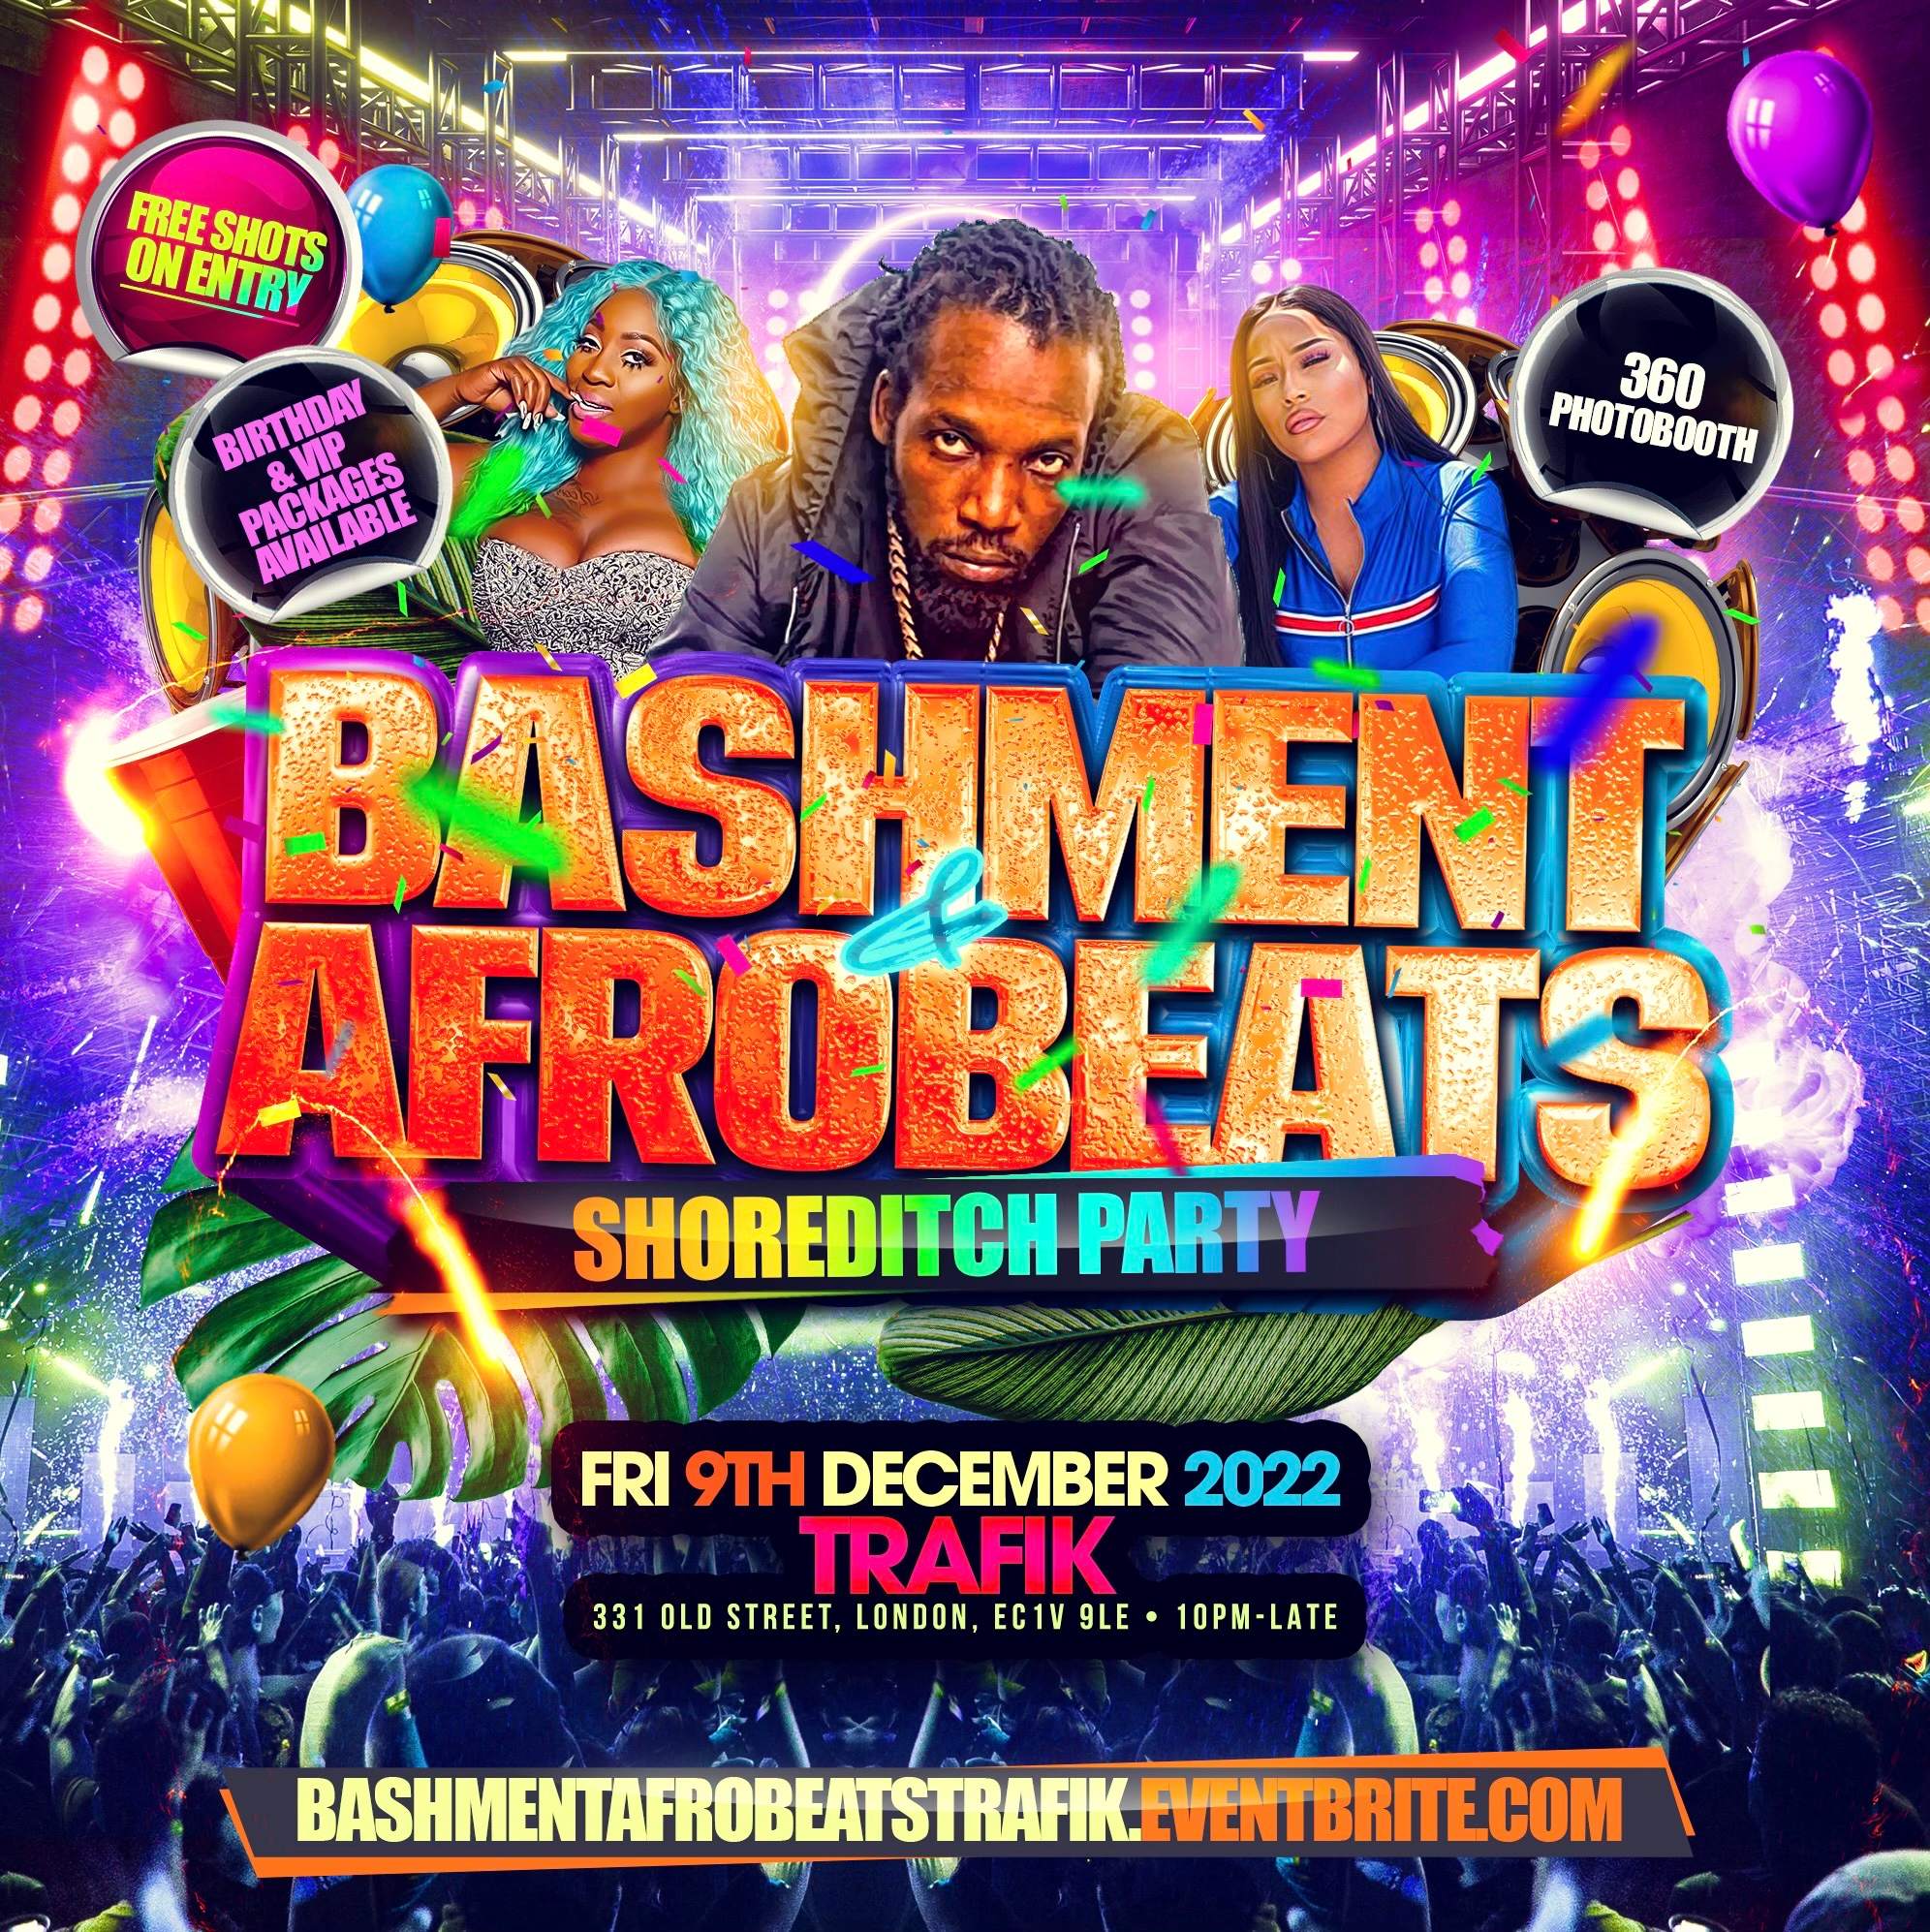 Bashment X Afrobeats Shoreditch Party - London's Craziest Party Returns - Página frontal